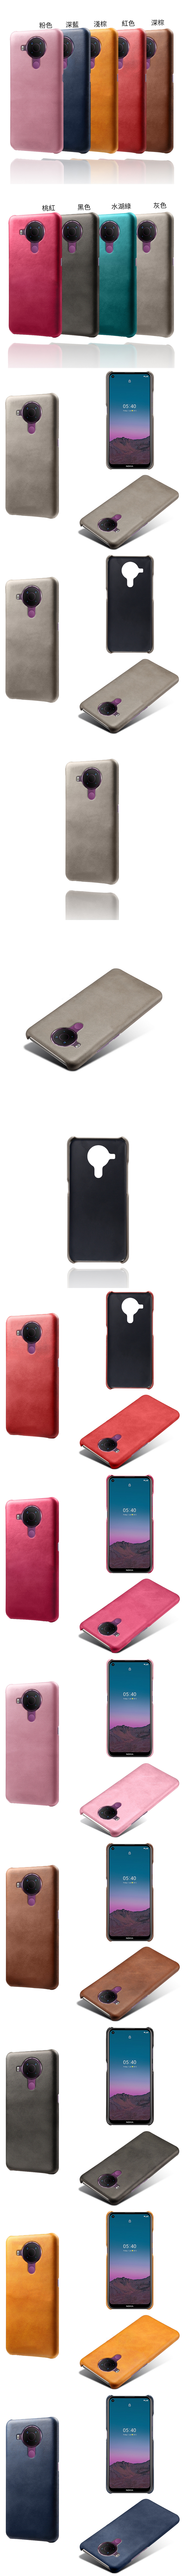 Nokia 5.4 皮革保護殼(PLAIN) - 牛皮仿真皮紋單色背蓋素色多色手機殼保護套手機套